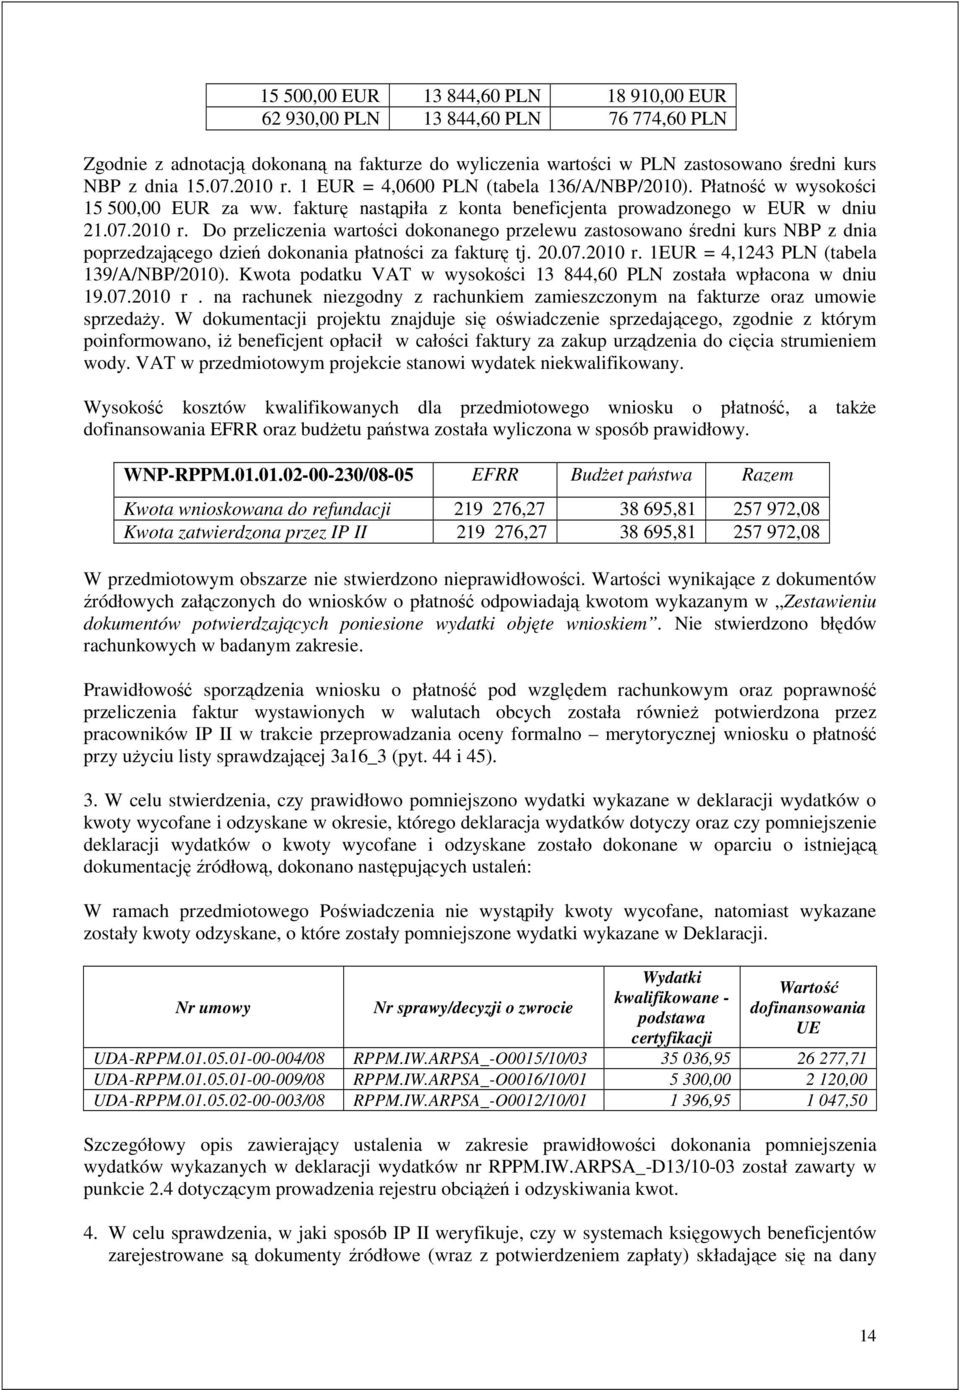 20.07.2010 r. 1EUR = 4,1243 PLN (tabela 139/A/NBP/2010). Kwota podatku VAT w wysokości 13 844,60 PLN została wpłacona w dniu 19.07.2010 r. na rachunek niezgodny z rachunkiem zamieszczonym na fakturze oraz umowie sprzedaży.